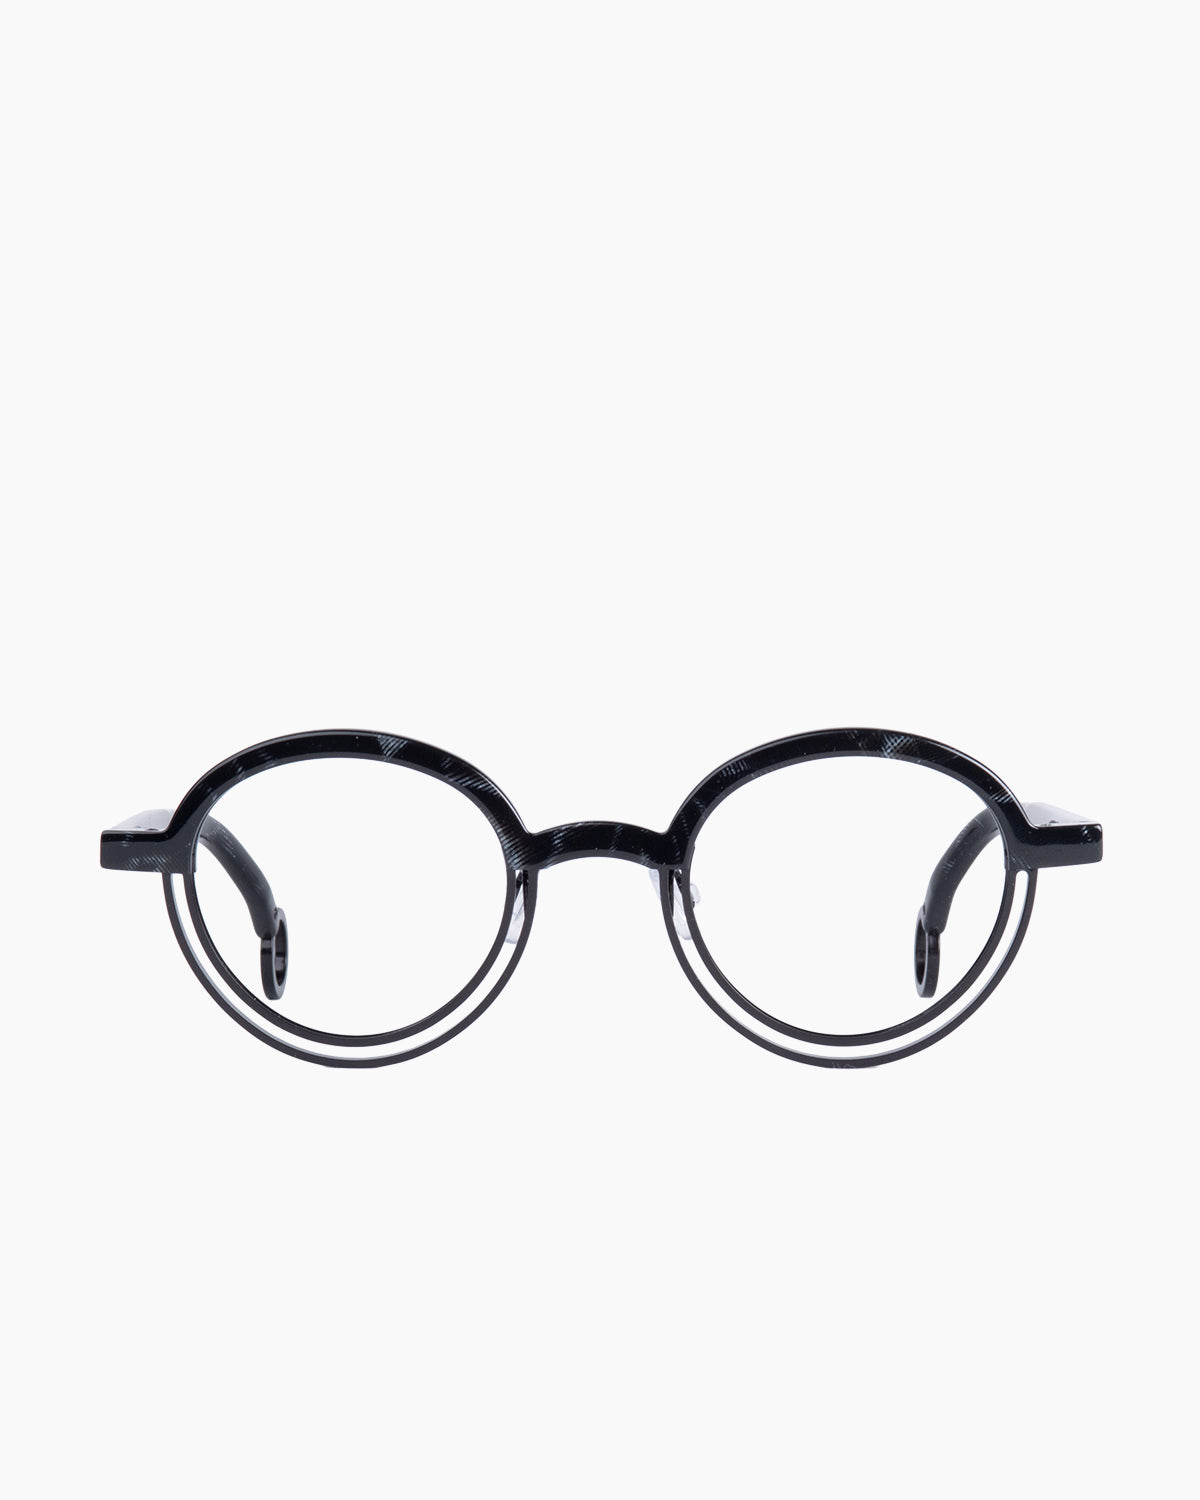 Theo - BUMPER - 2 | Bar à lunettes